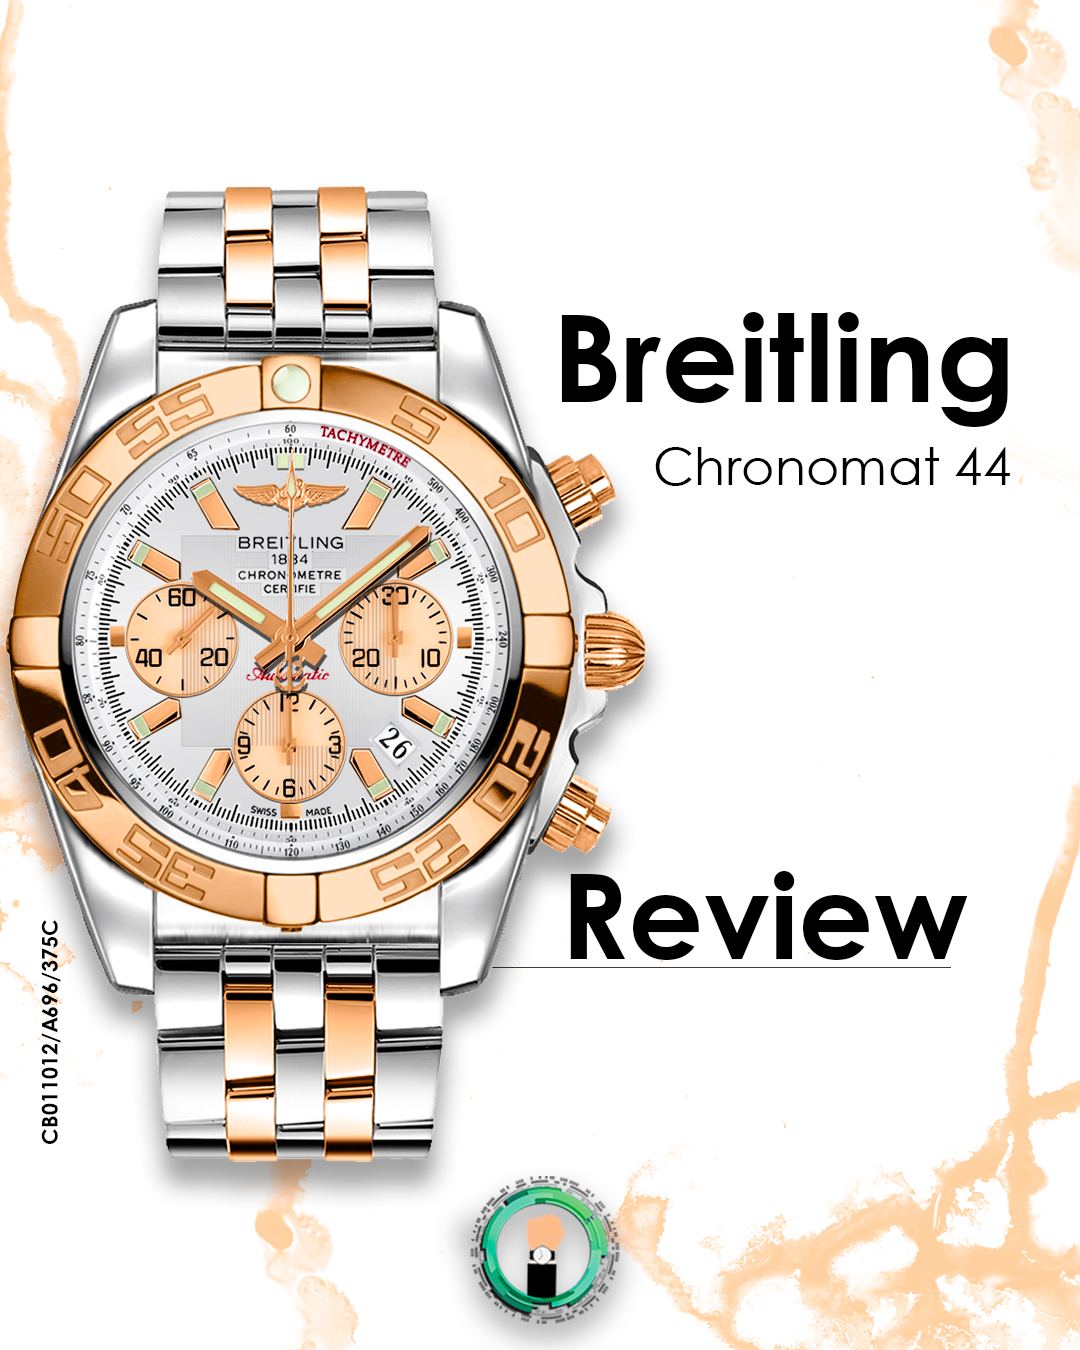 Breitling Chronomat 44mm